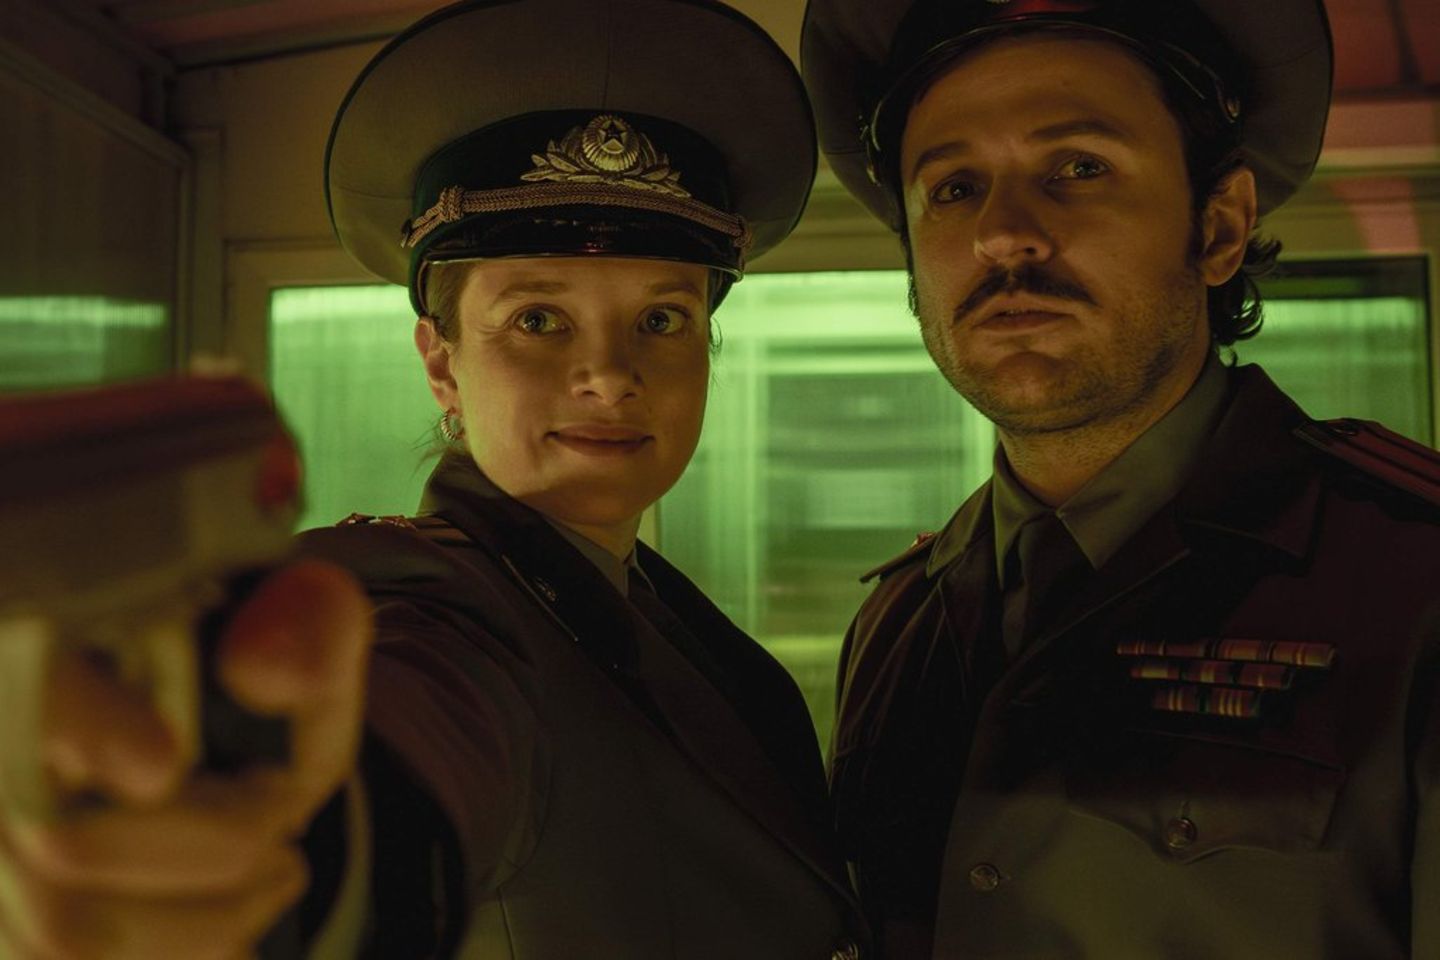 Jella Haase und Dimitrij Schaad spielen die Hauptrollen in der Netflix-Serie "Kleo".